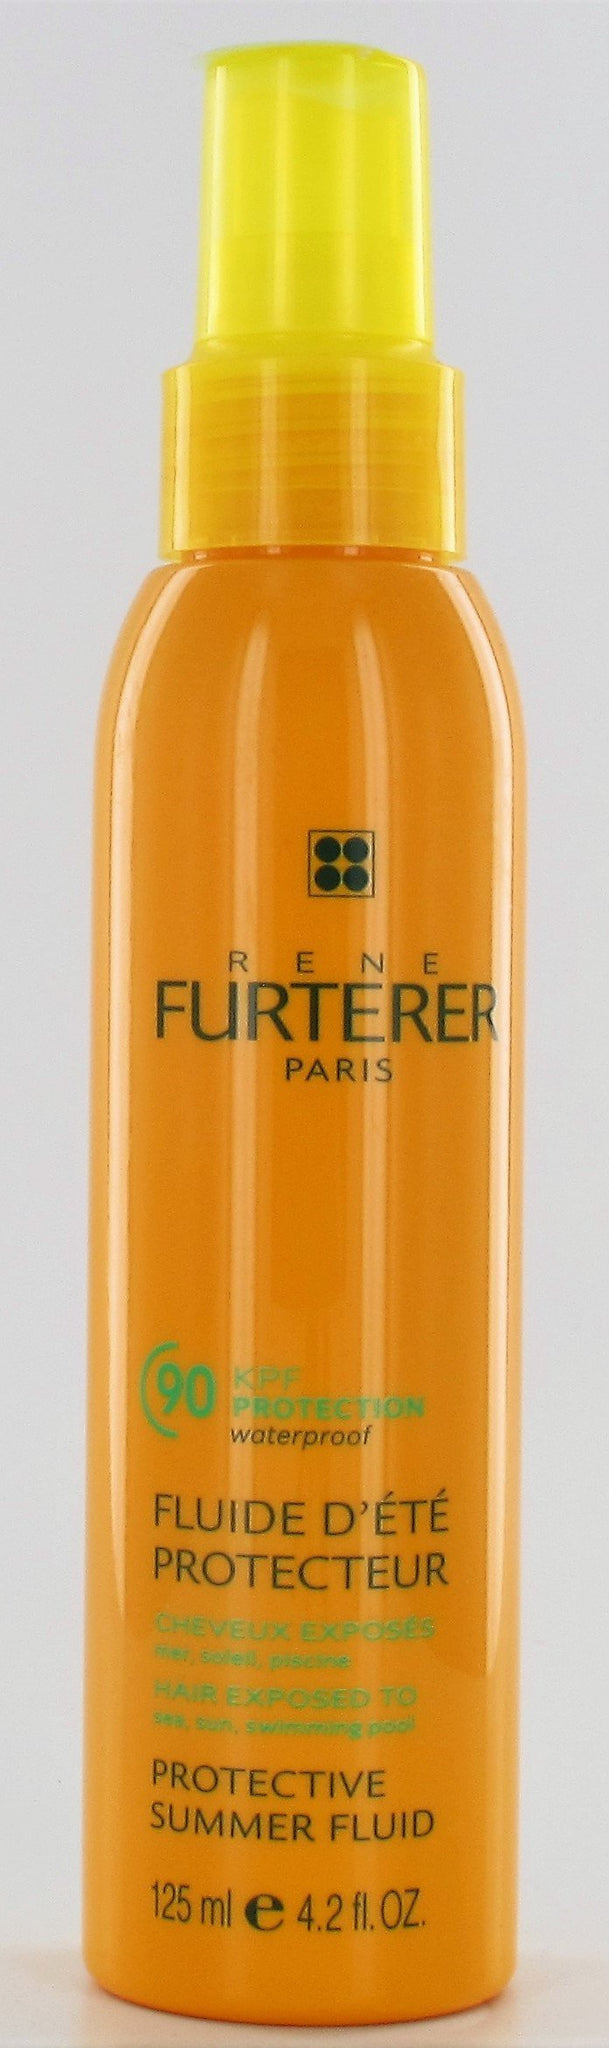 Rene Furterer Protective Summer Fluid 4.2 oz